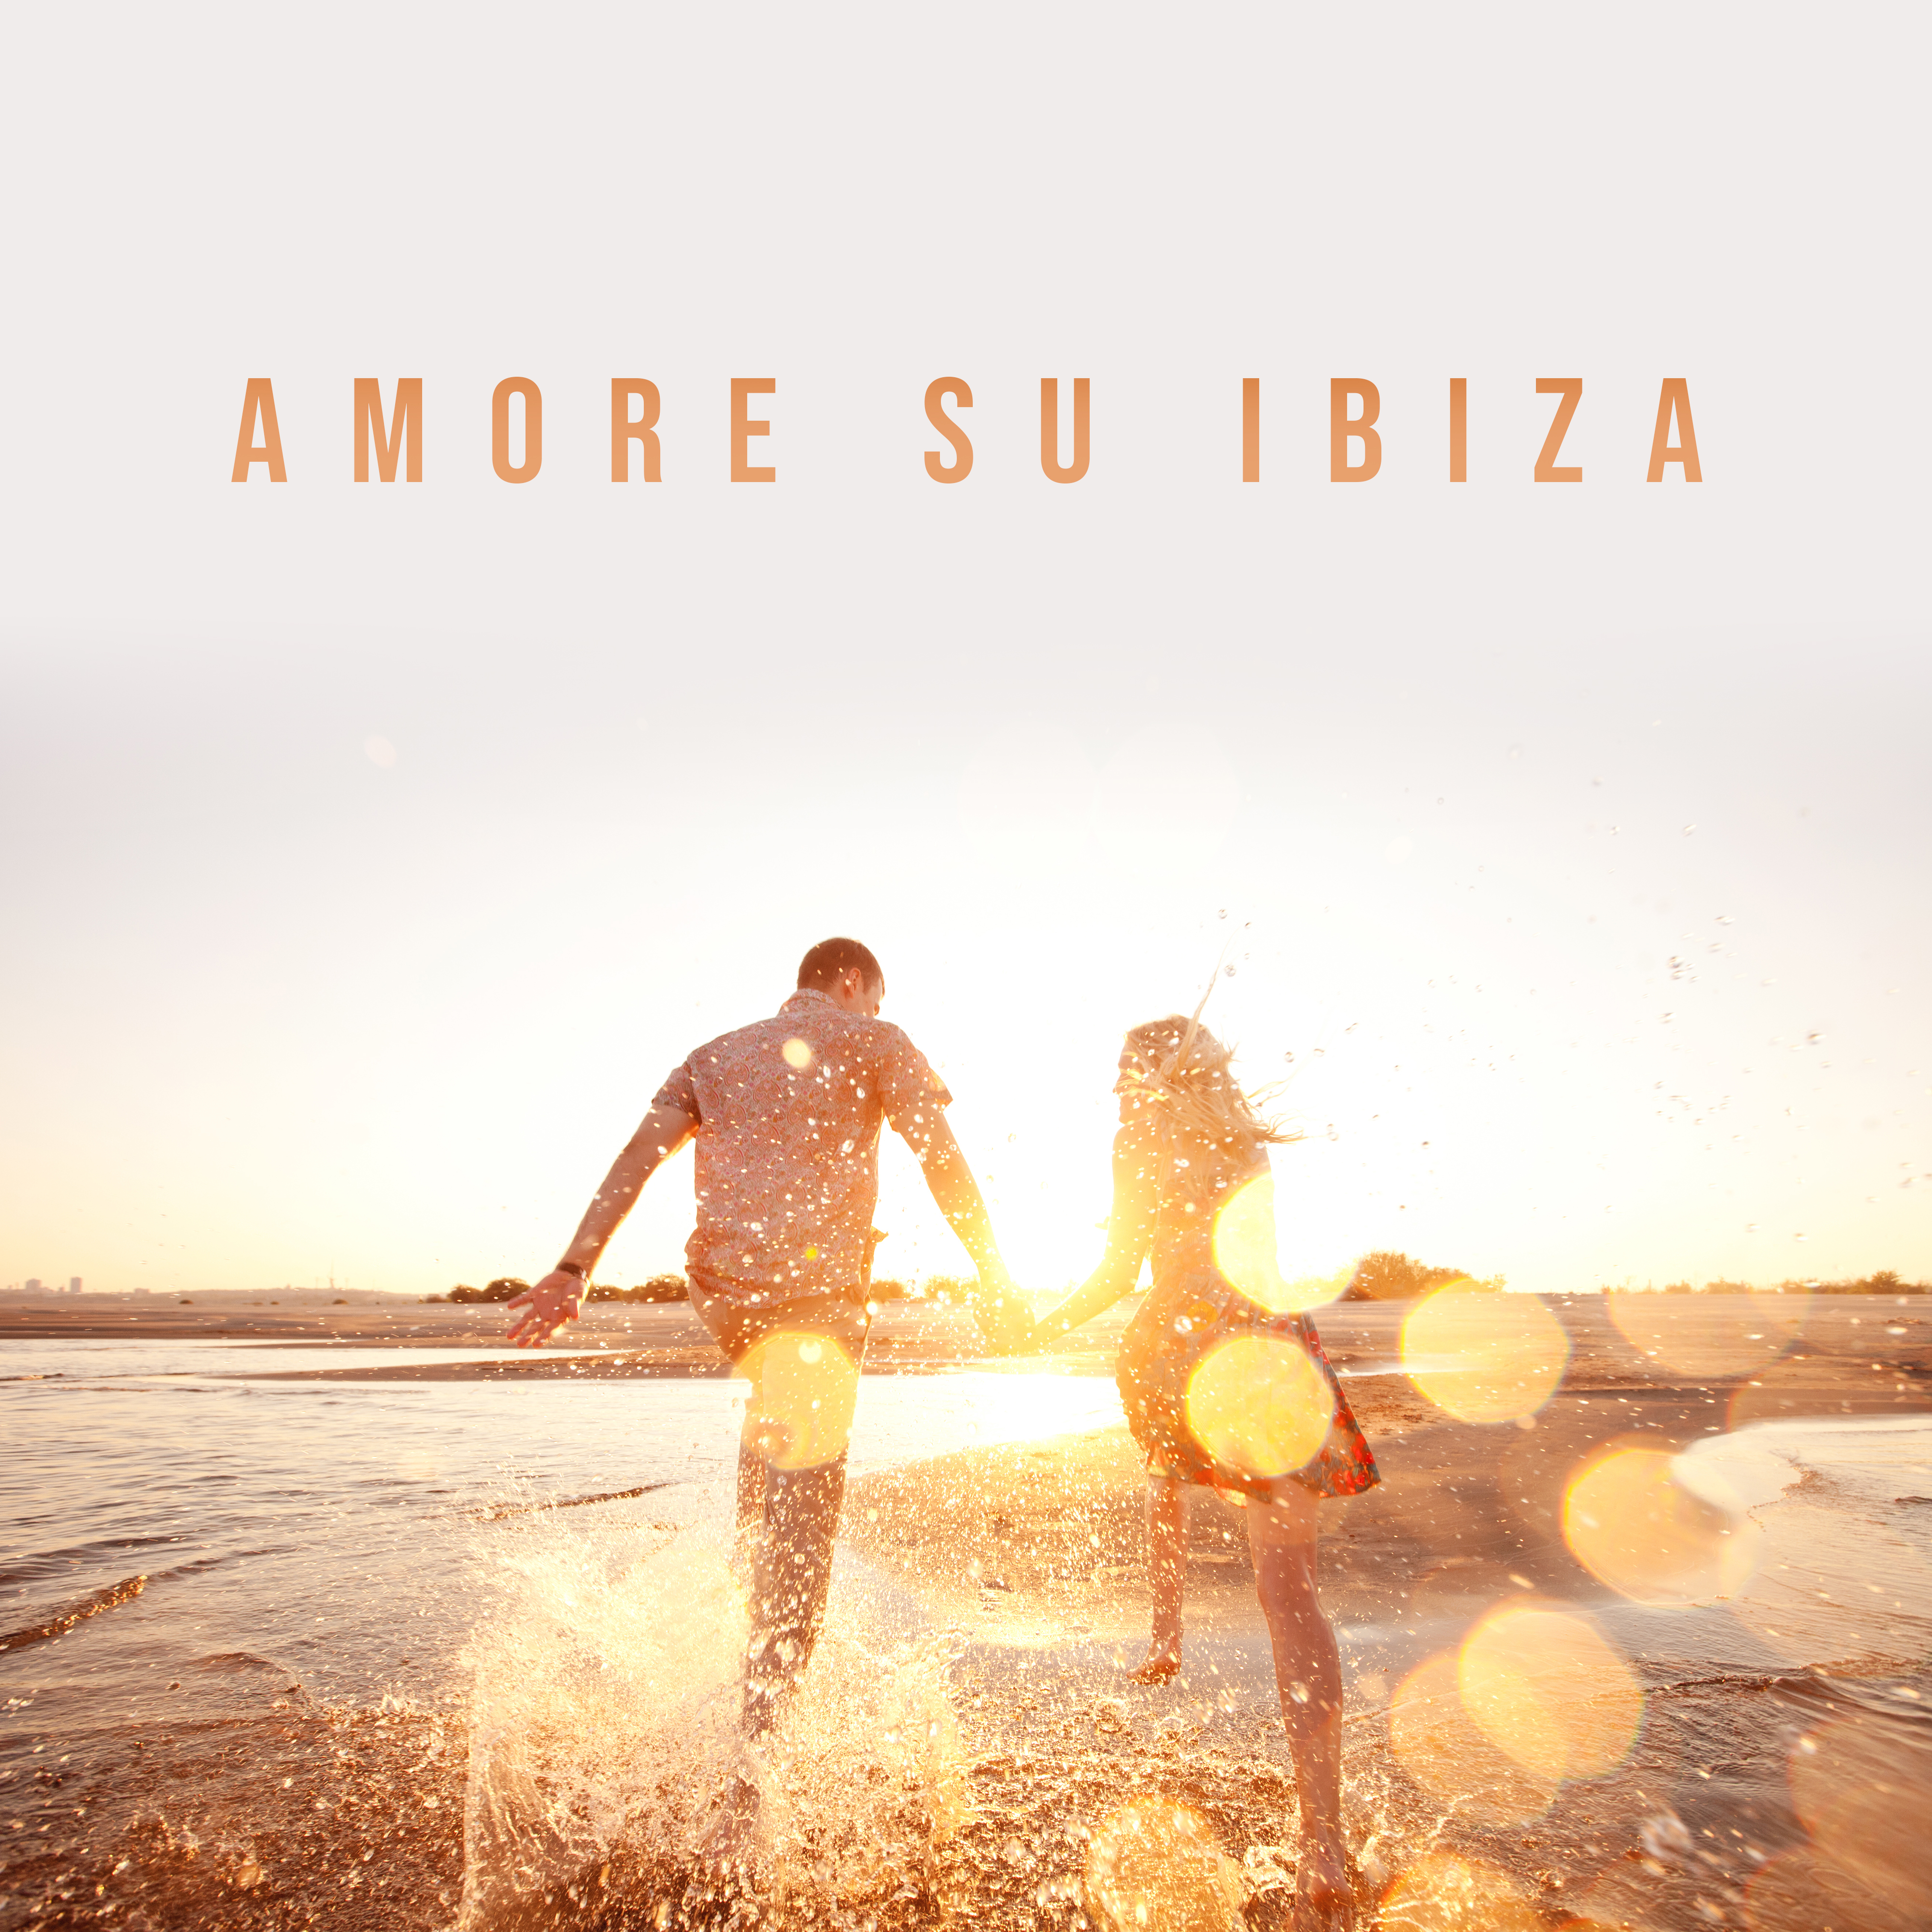 Amore su Ibiza: Date Romantiche, Serate Solo per Due, Cene a Lume di Candela e Lunghe Conversazioni